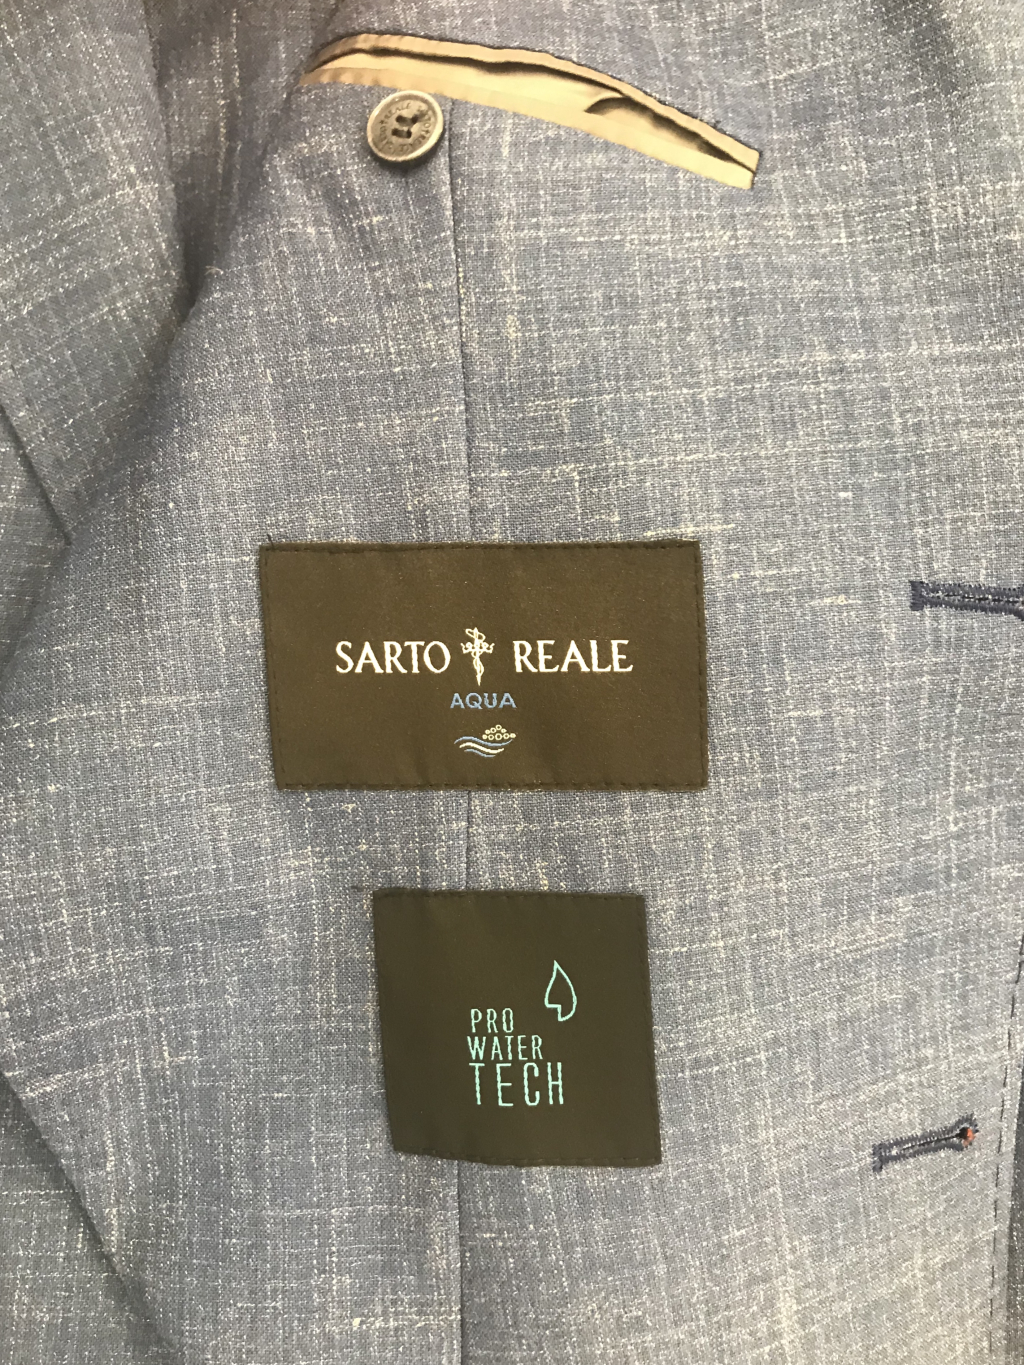 Sarto Reale - Идеальный костюм на самые важные выходы